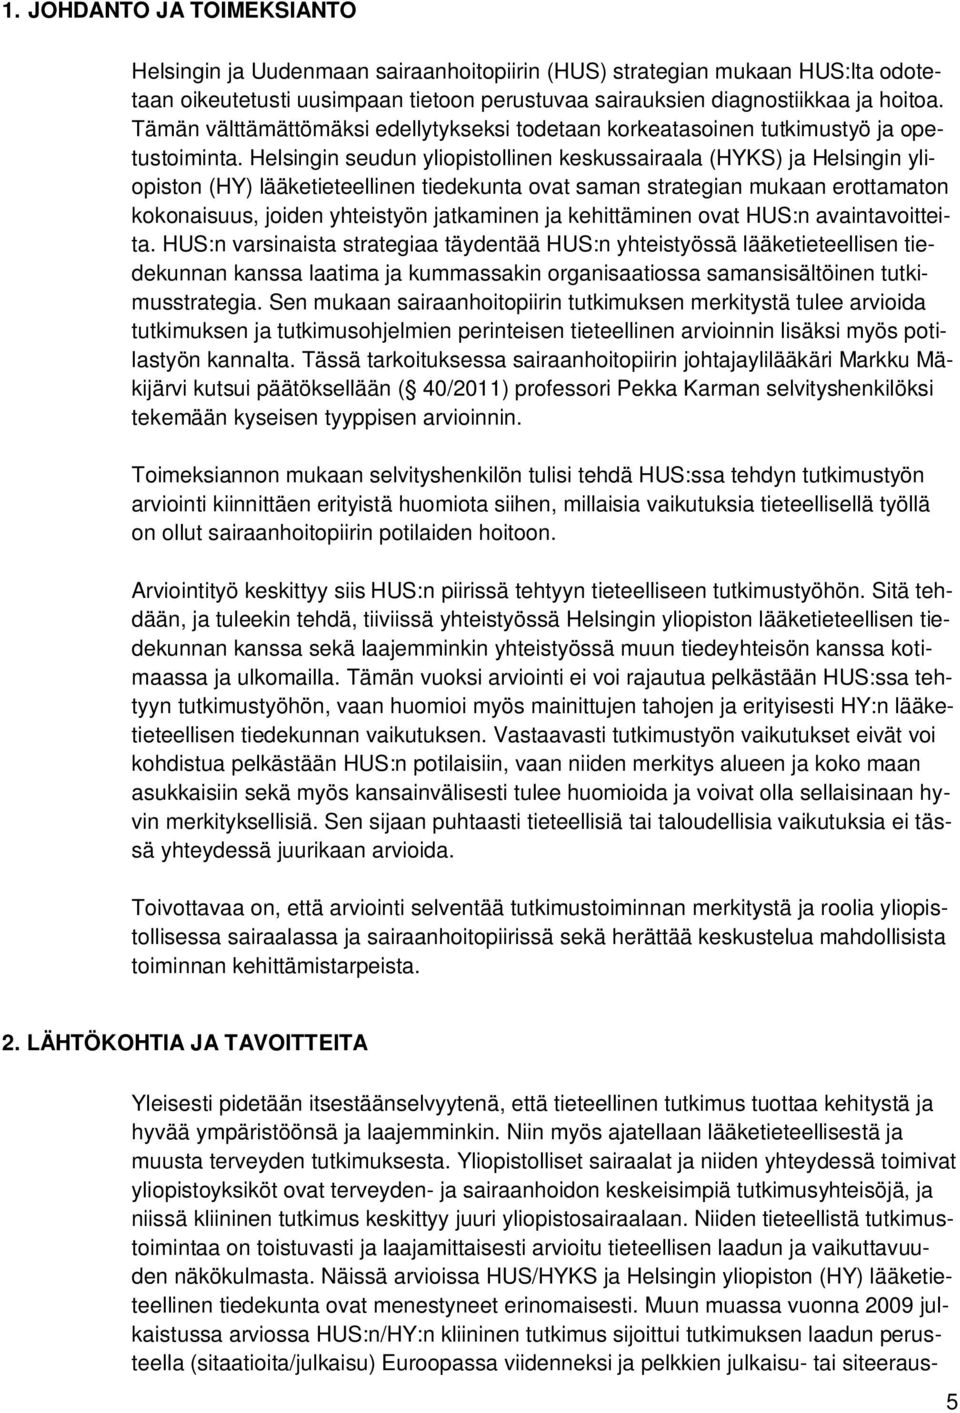 Helsingin seudun yliopistollinen keskussairaala (HYKS) ja Helsingin yliopiston (HY) lääketieteellinen tiedekunta ovat saman strategian mukaan erottamaton kokonaisuus, joiden yhteistyön jatkaminen ja